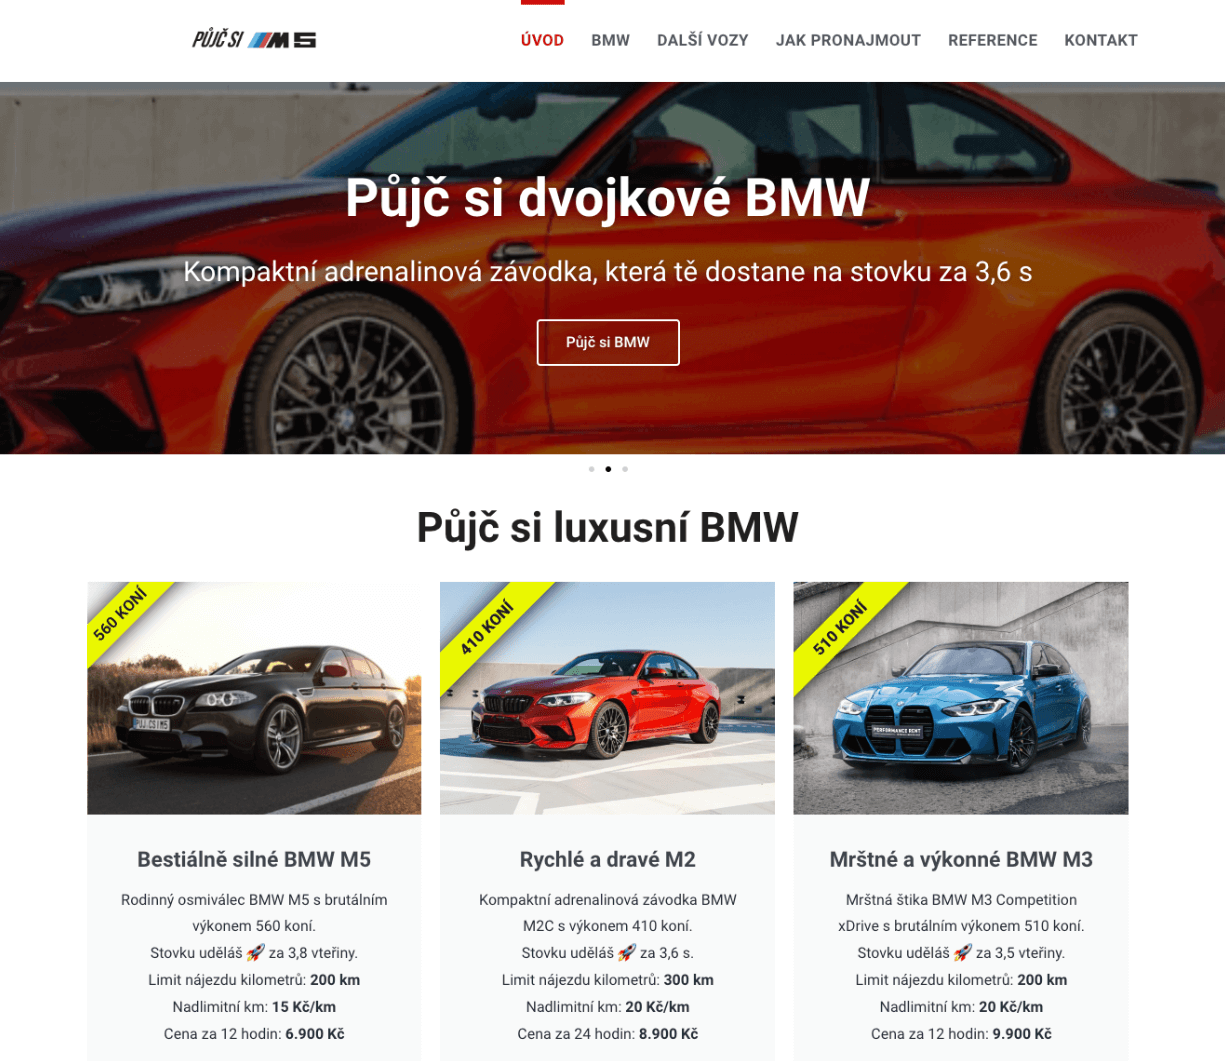 Návrh textů, obsahu a tvorba nového webu pro pražskou půjčovnu sportovních vozů - pujcsim5